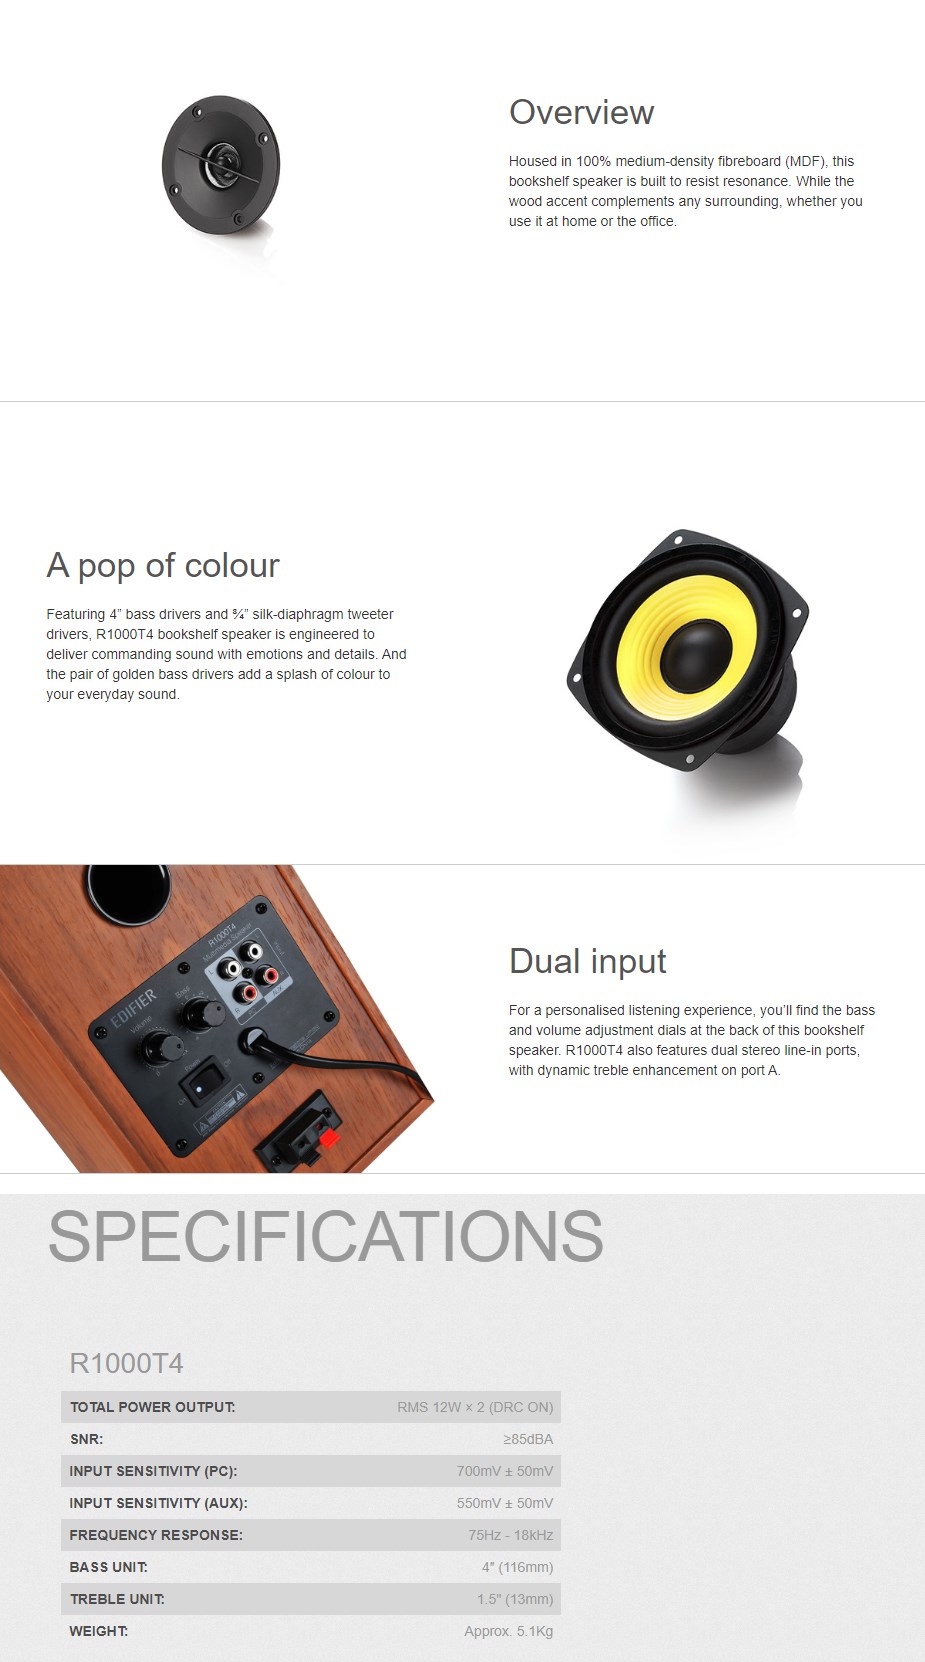 Edifier R1000T4 2.0 Bookshelf Speaker - Black - Overview 1